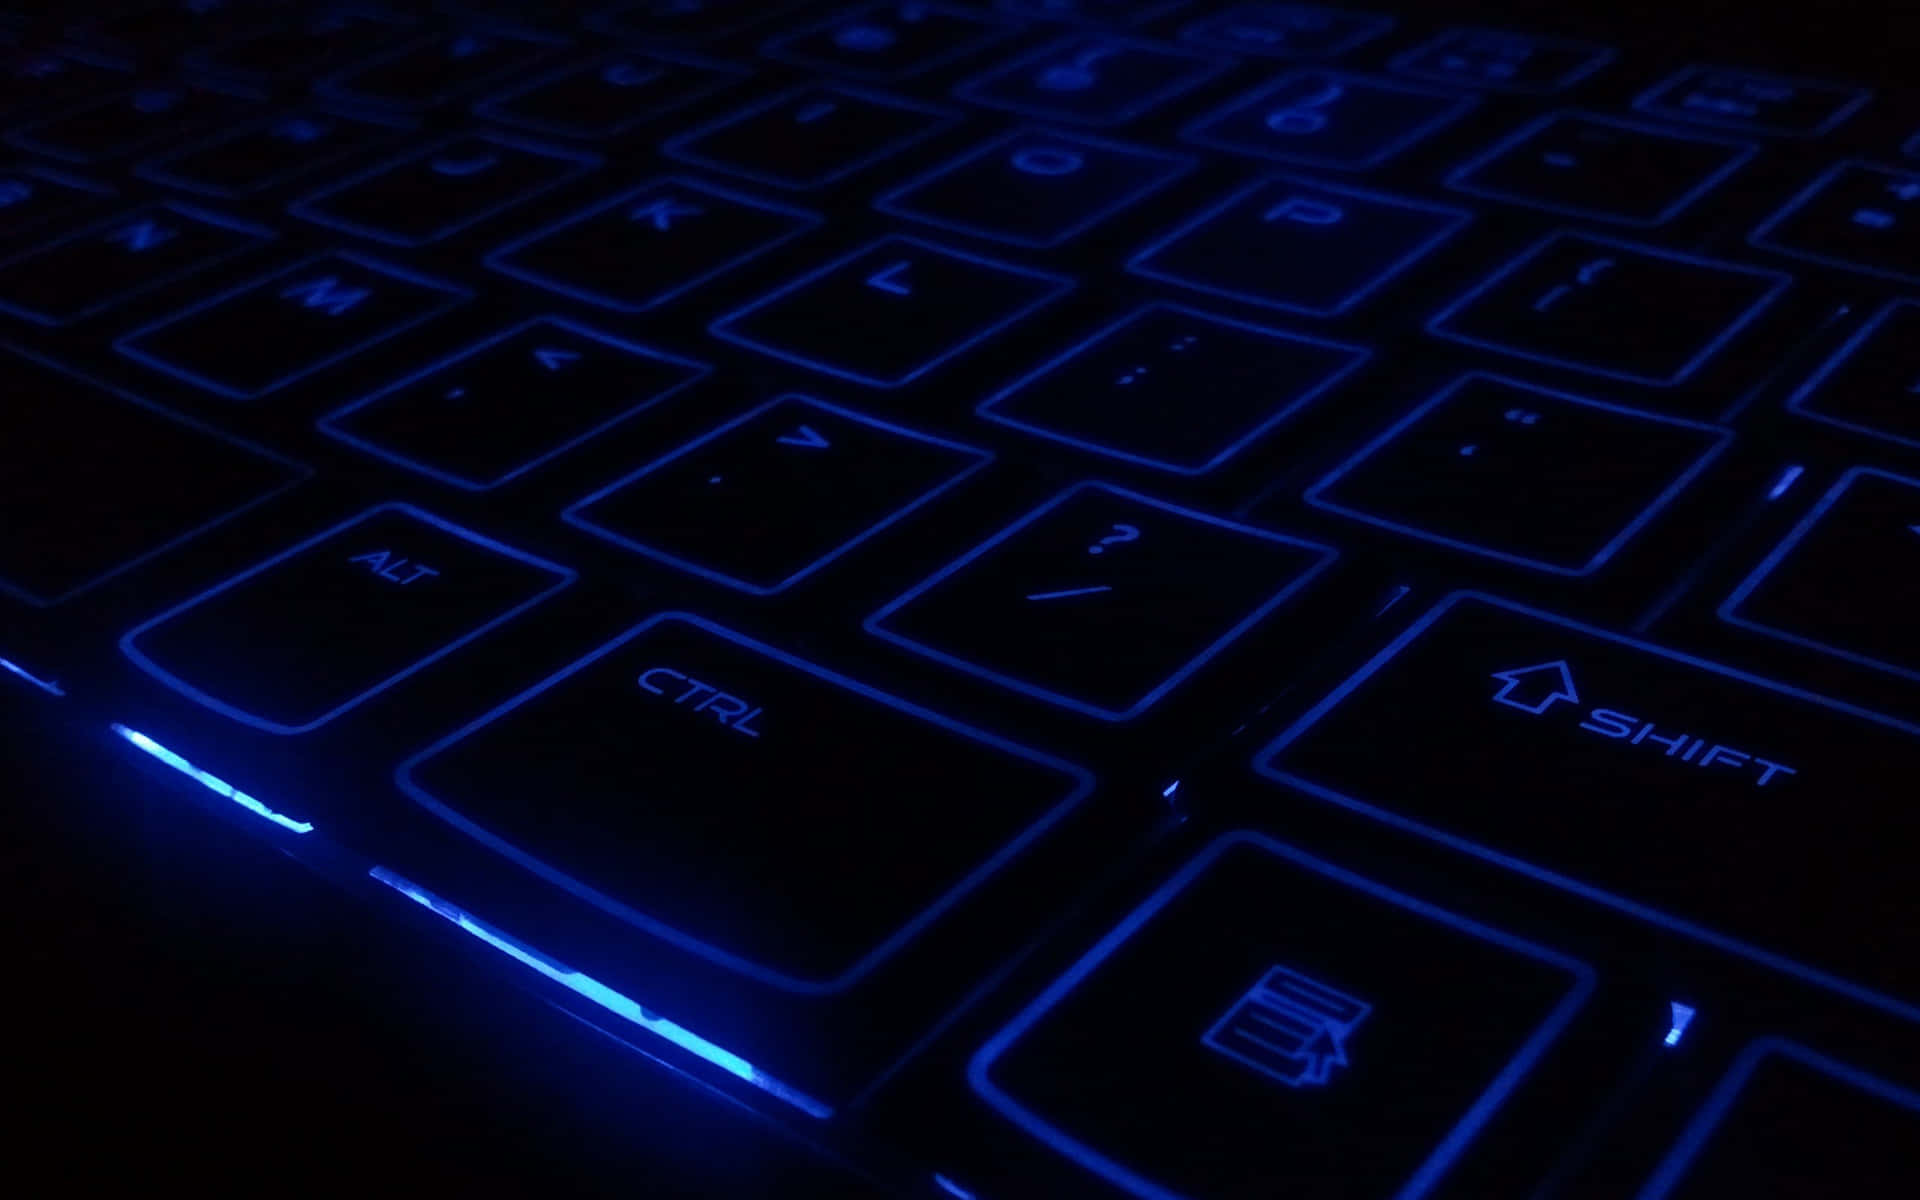 Smukblå Tastatur.